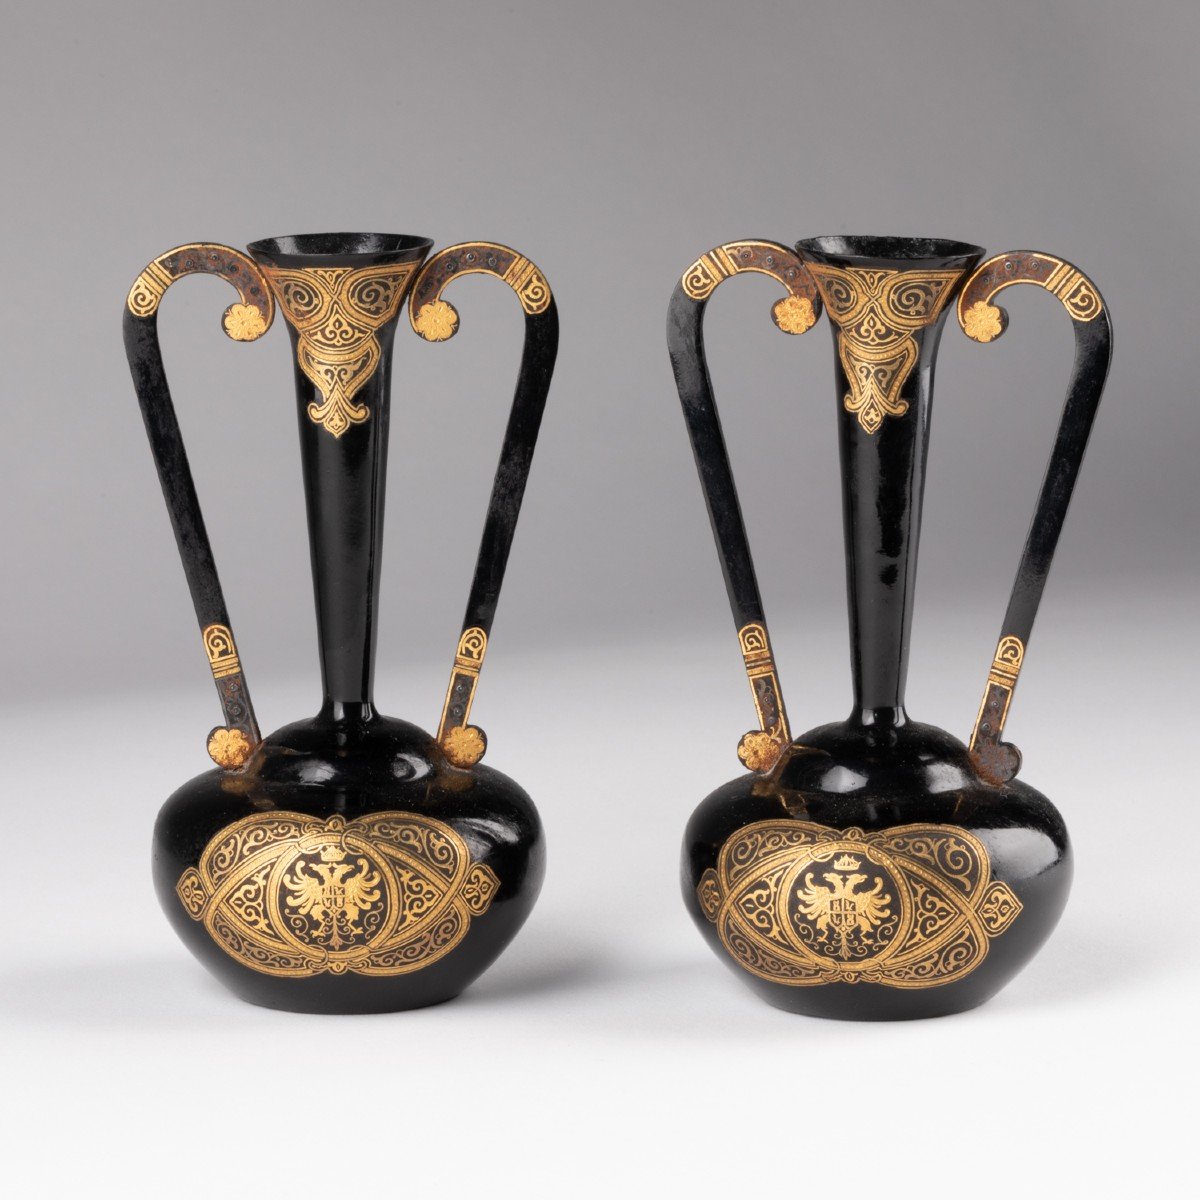 Paire de vases soliflore en métal laqué noir et doré, Espagne, XIXe